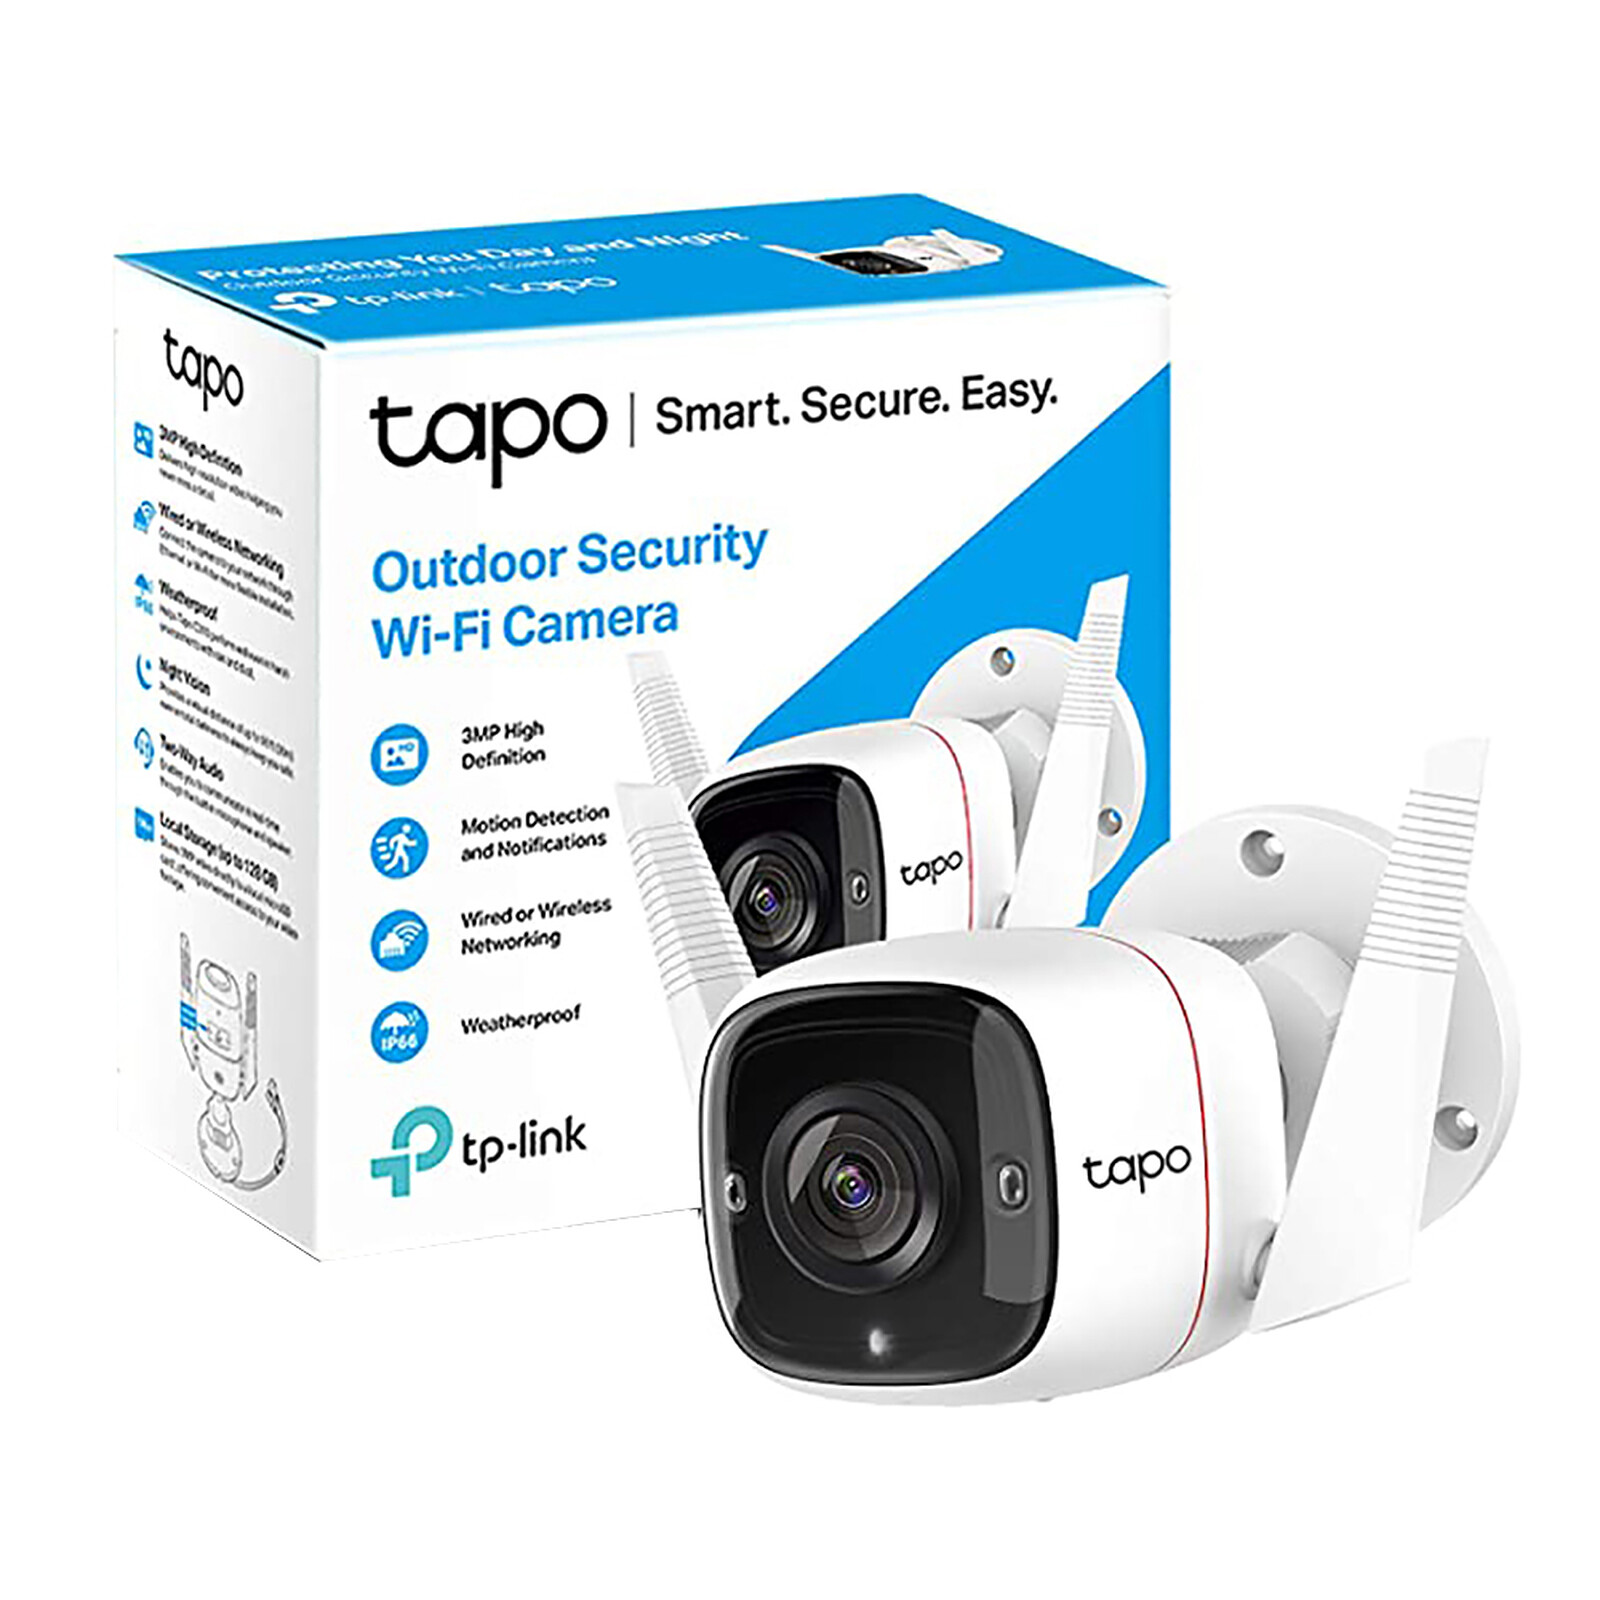 TP-LINK Tapo C310 - Caméra de surveillance - Garantie 3 ans LDLC